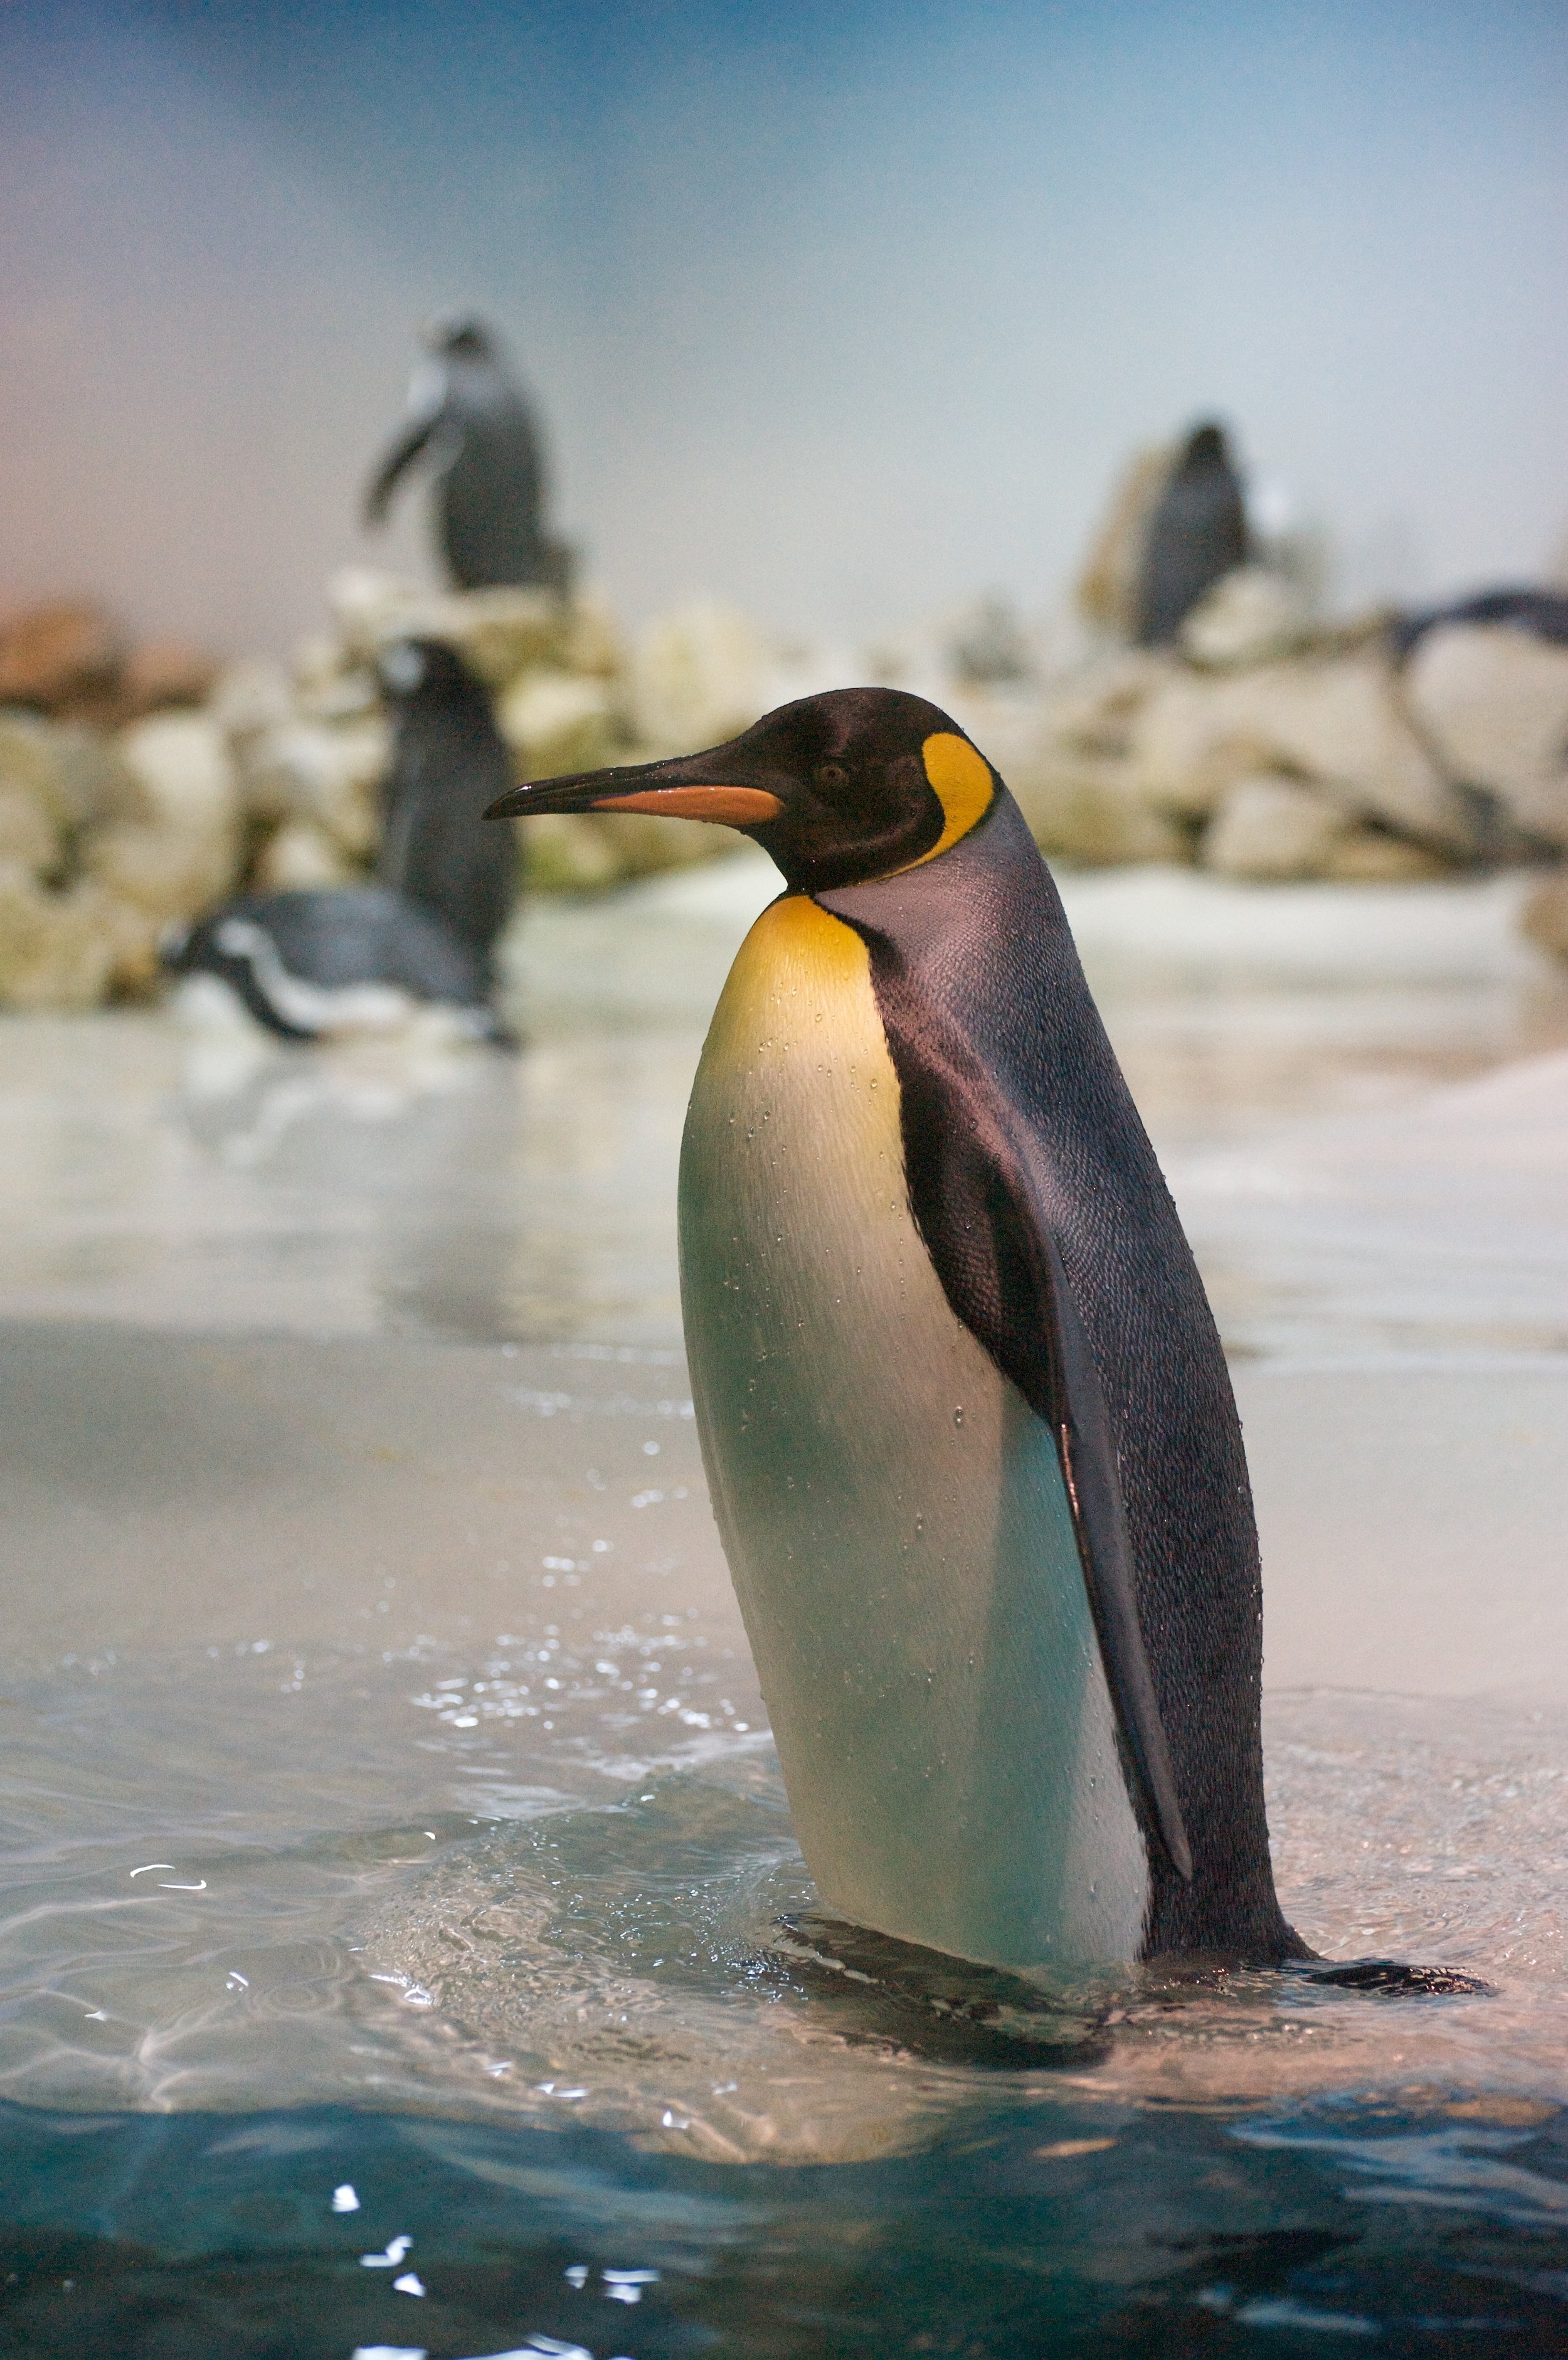 King_Penguin_(Aptenodytes_patagonicus)_-Munich_Zoo-8-min.jpg